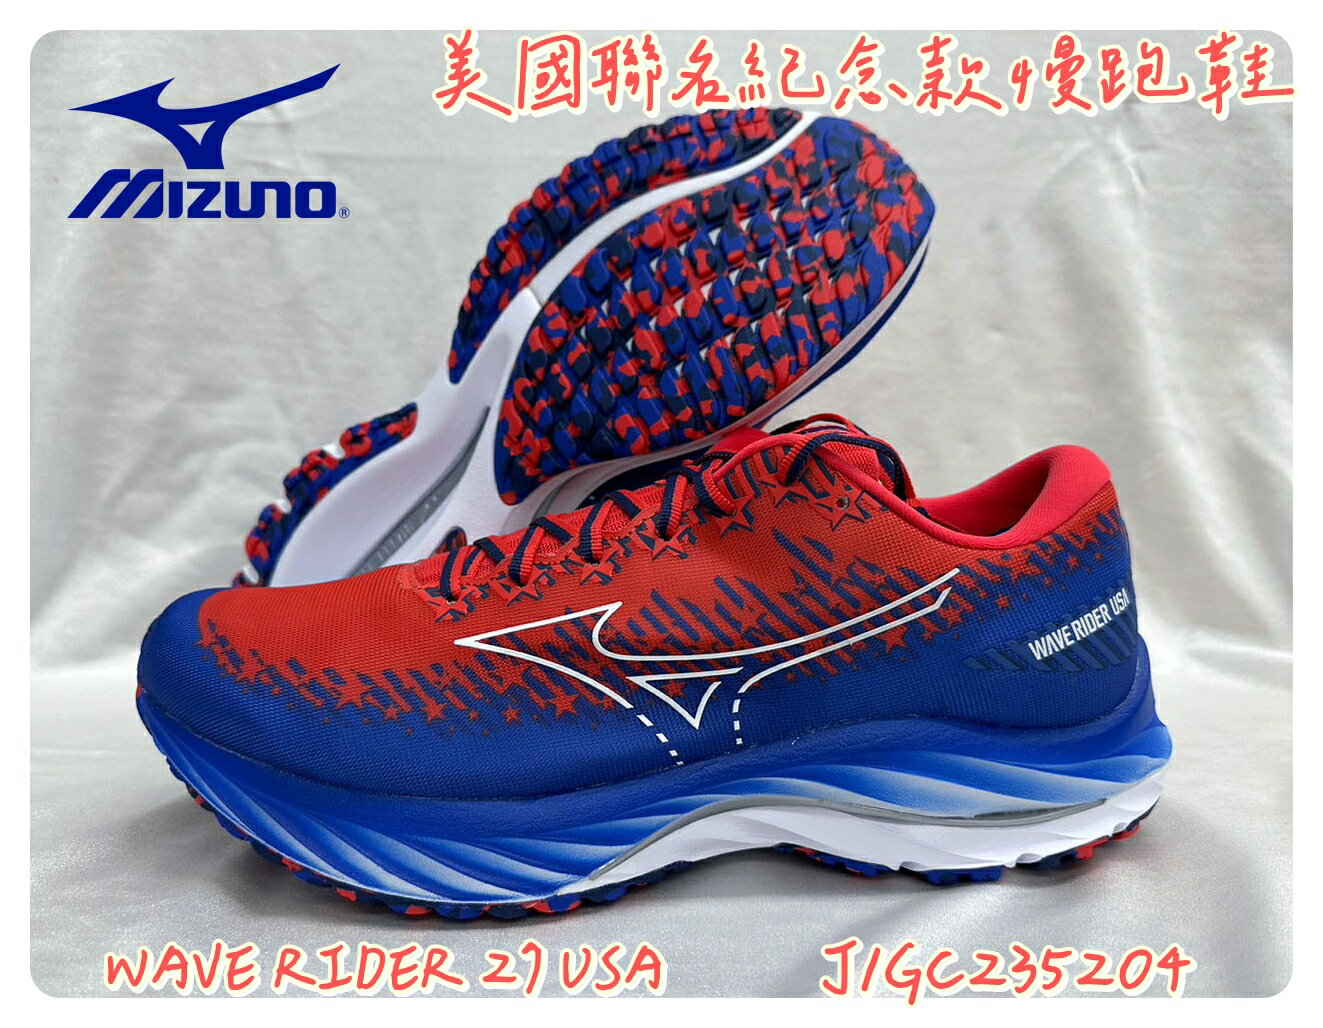 MIZUNO 美津濃 WAVE RIDER 27 USA 男慢跑鞋 J1GC235204 美國聯名紀念款 大自在